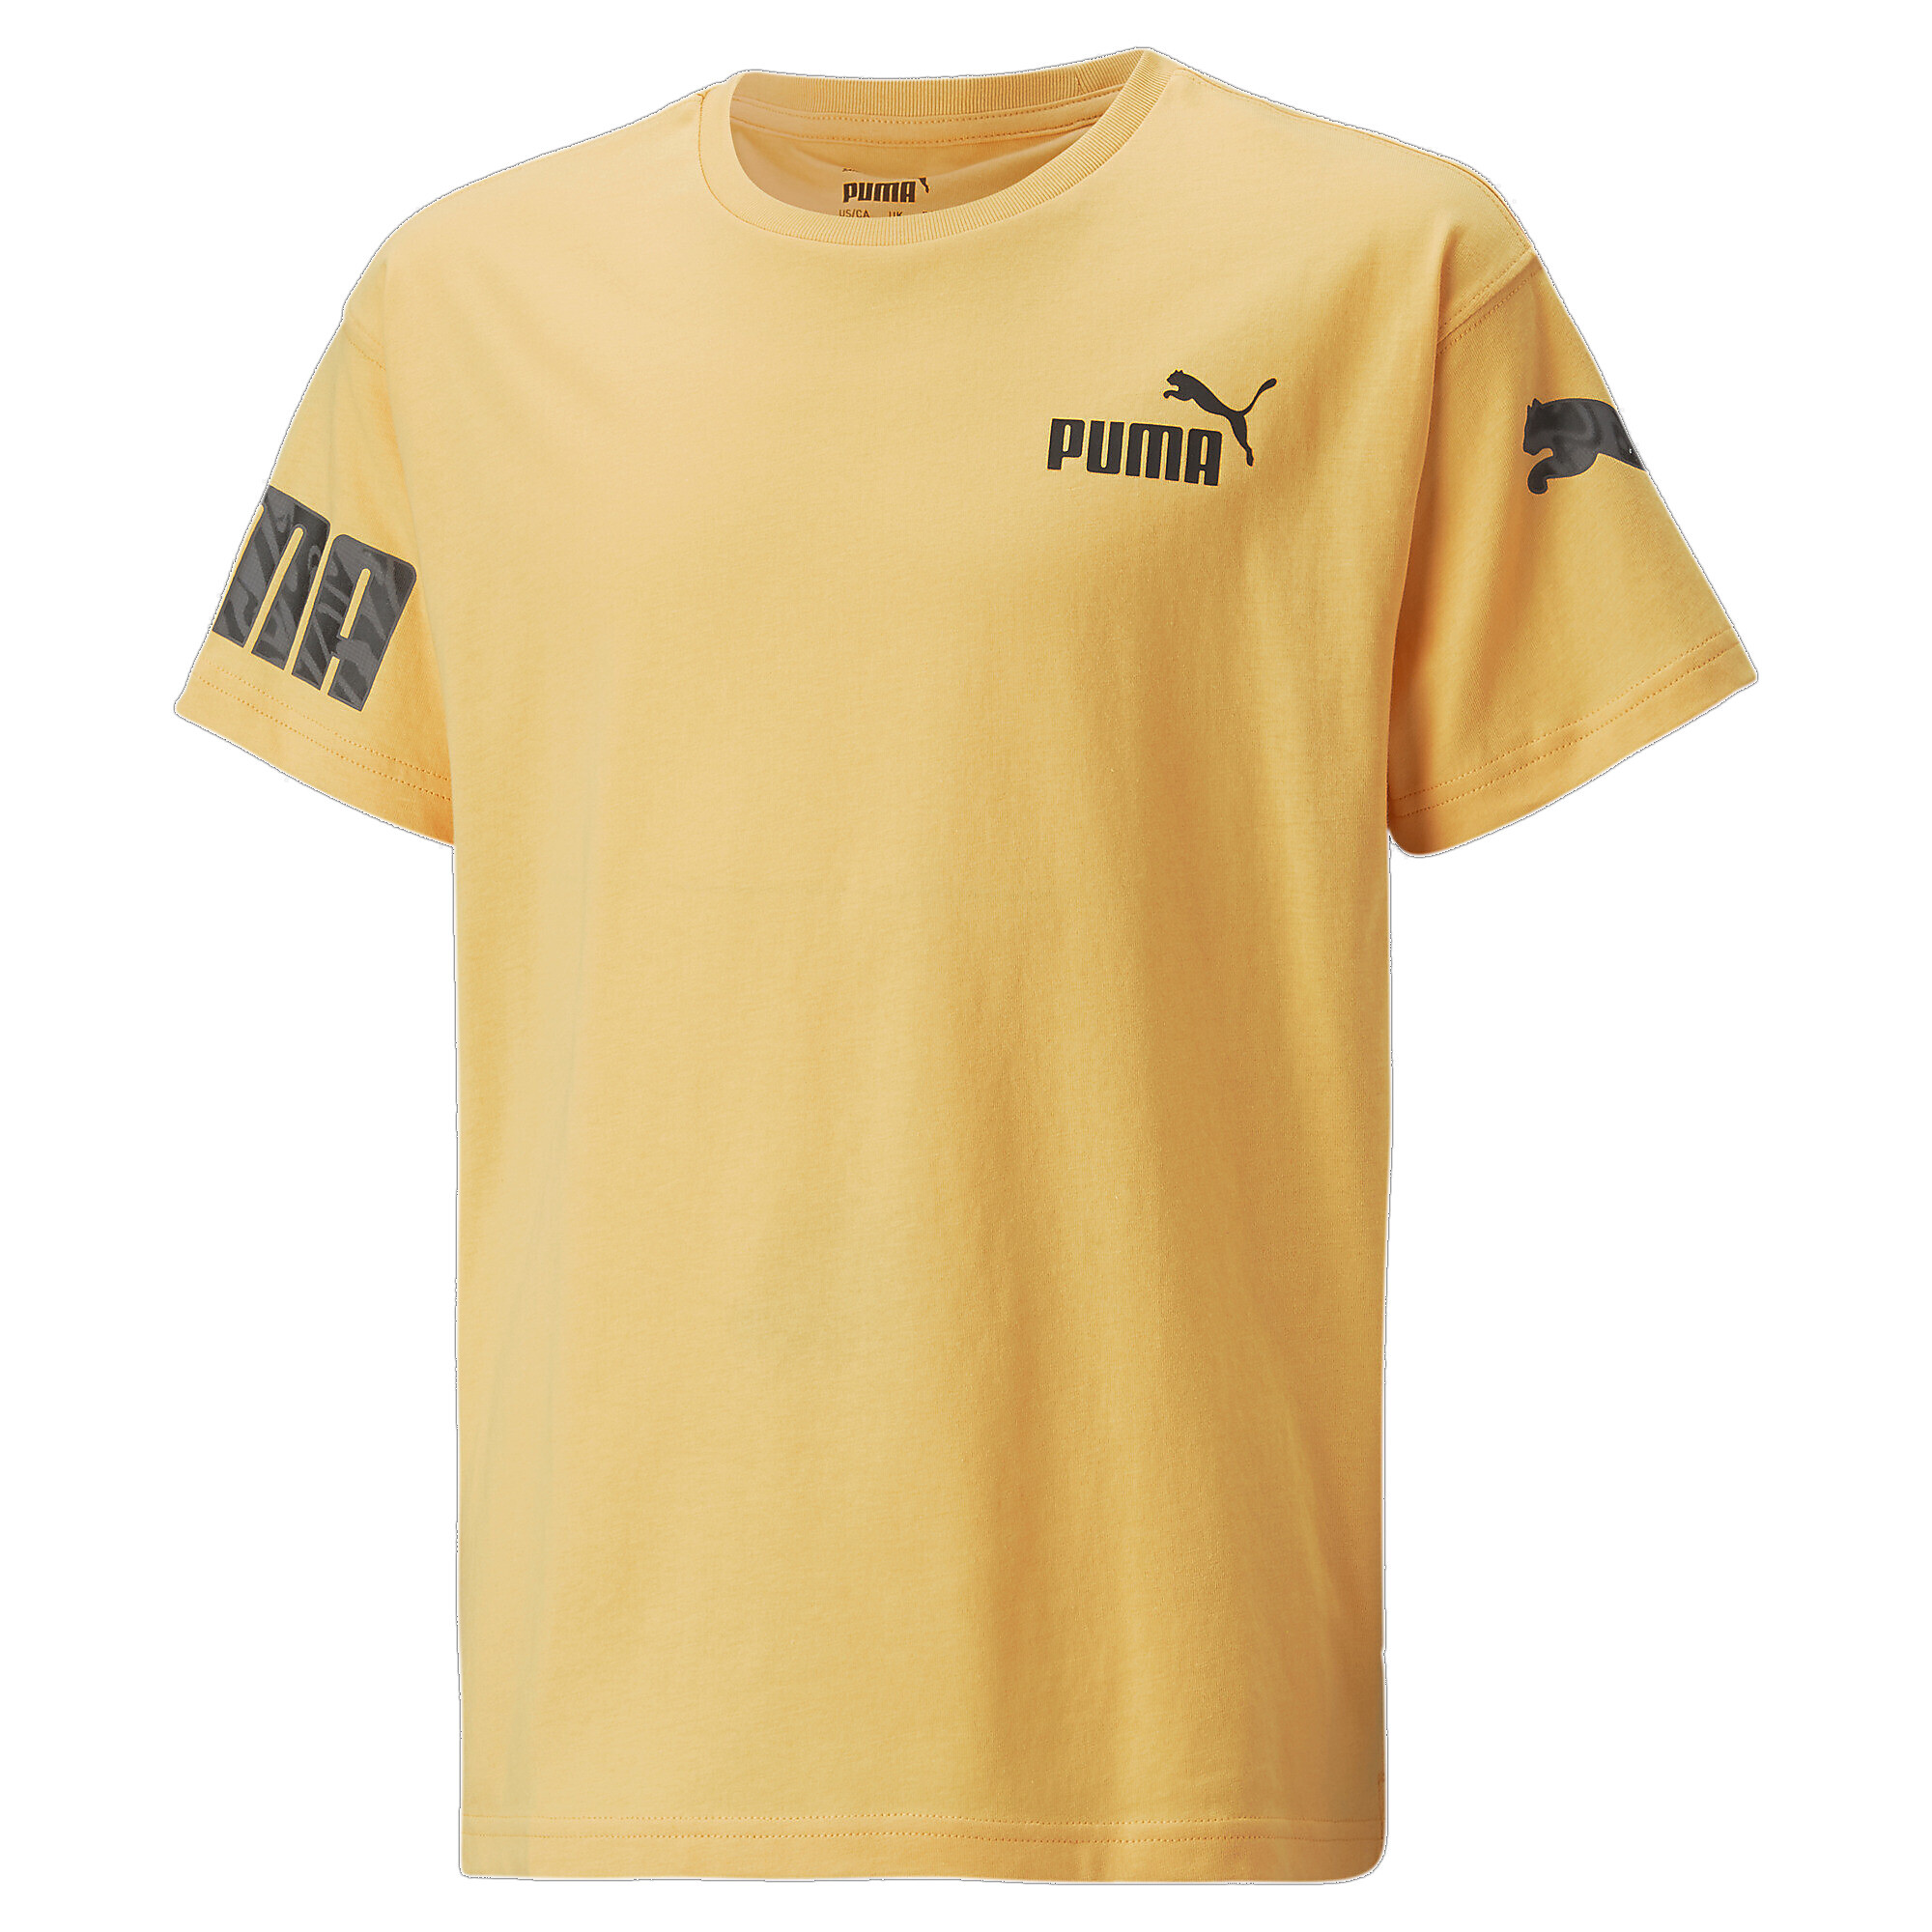 30%OFF！＜プーマ公式通販＞ プーマ キッズ ボーイズ PUMA POWER サマー 半袖 Tシャツ 120-160cm メンズ Mustard Seed ｜PUMA.com